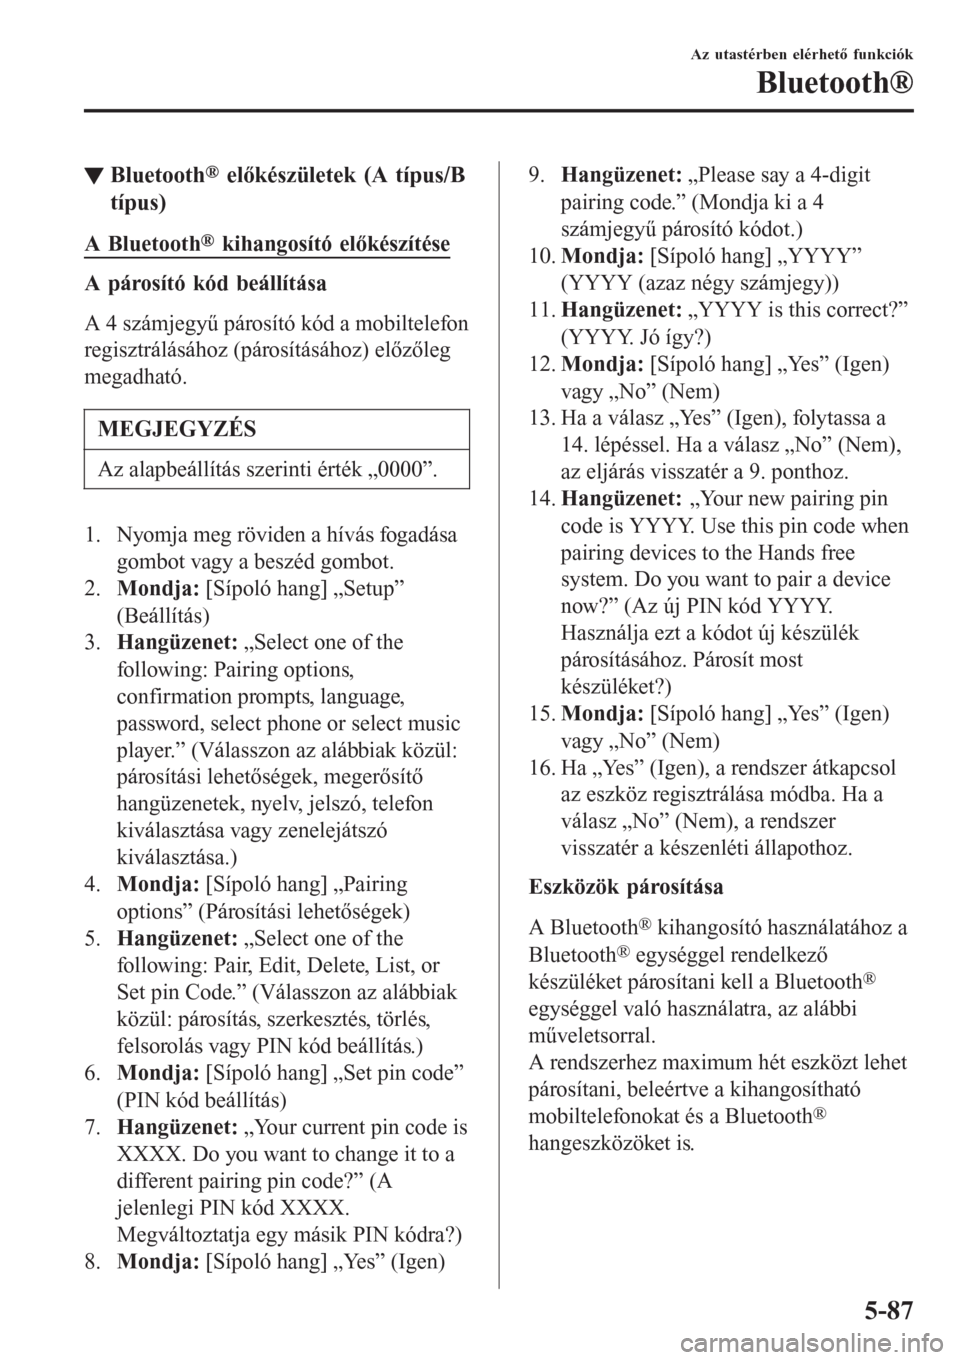 MAZDA MODEL CX-3 2016  Kezelési útmutató (in Hungarian) ▼Bluetooth® előkészületek (A típus/B
típus)
A Bluetooth® kihangosító előkészítése
A párosító kód beállítása
A 4 számjegyű párosító kód a mobiltelefon
regisztrálásához (p